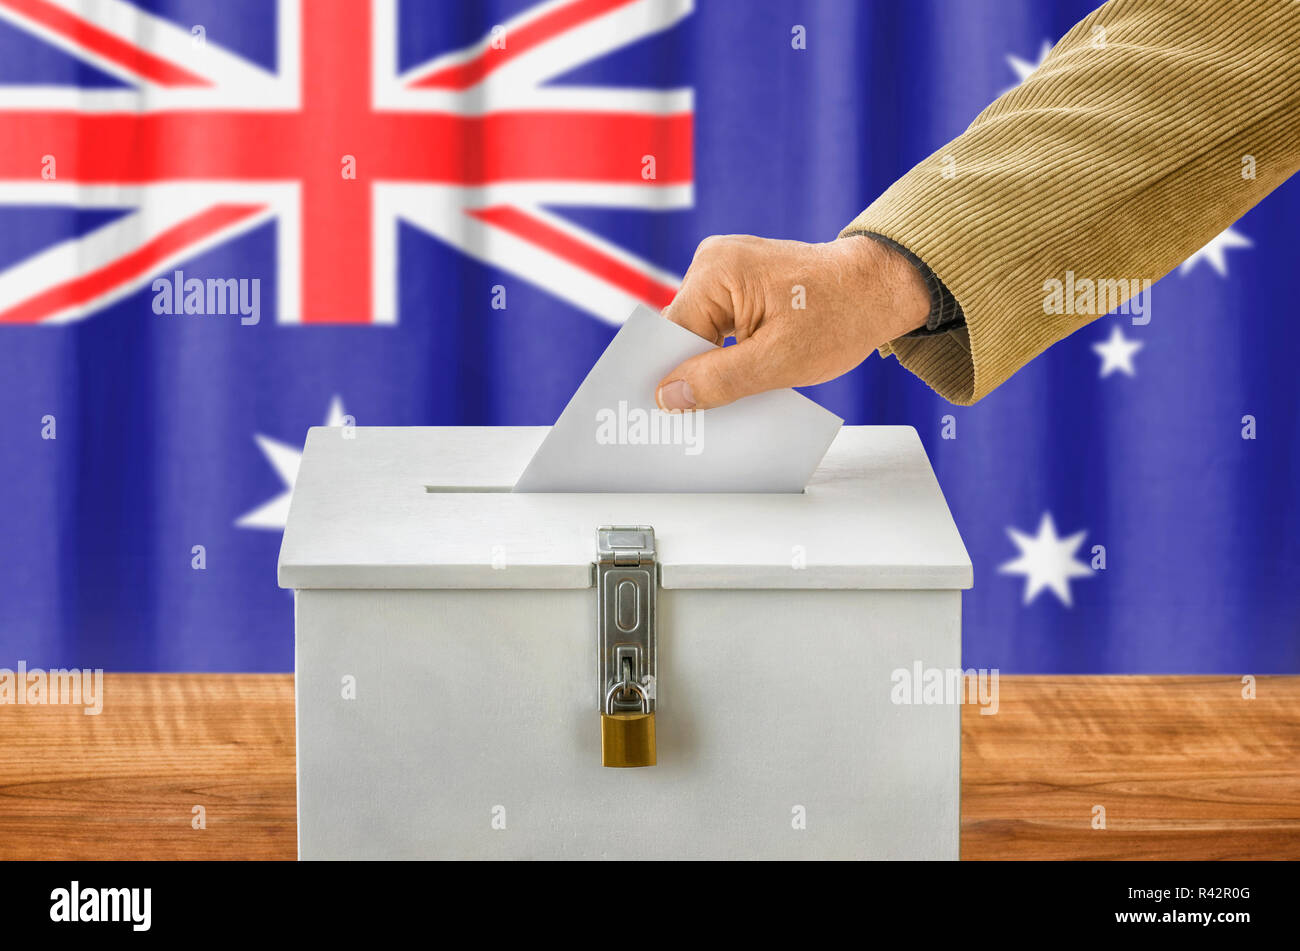 Mann die Stimmzettel in die Wahlurne - Australien Stockfoto